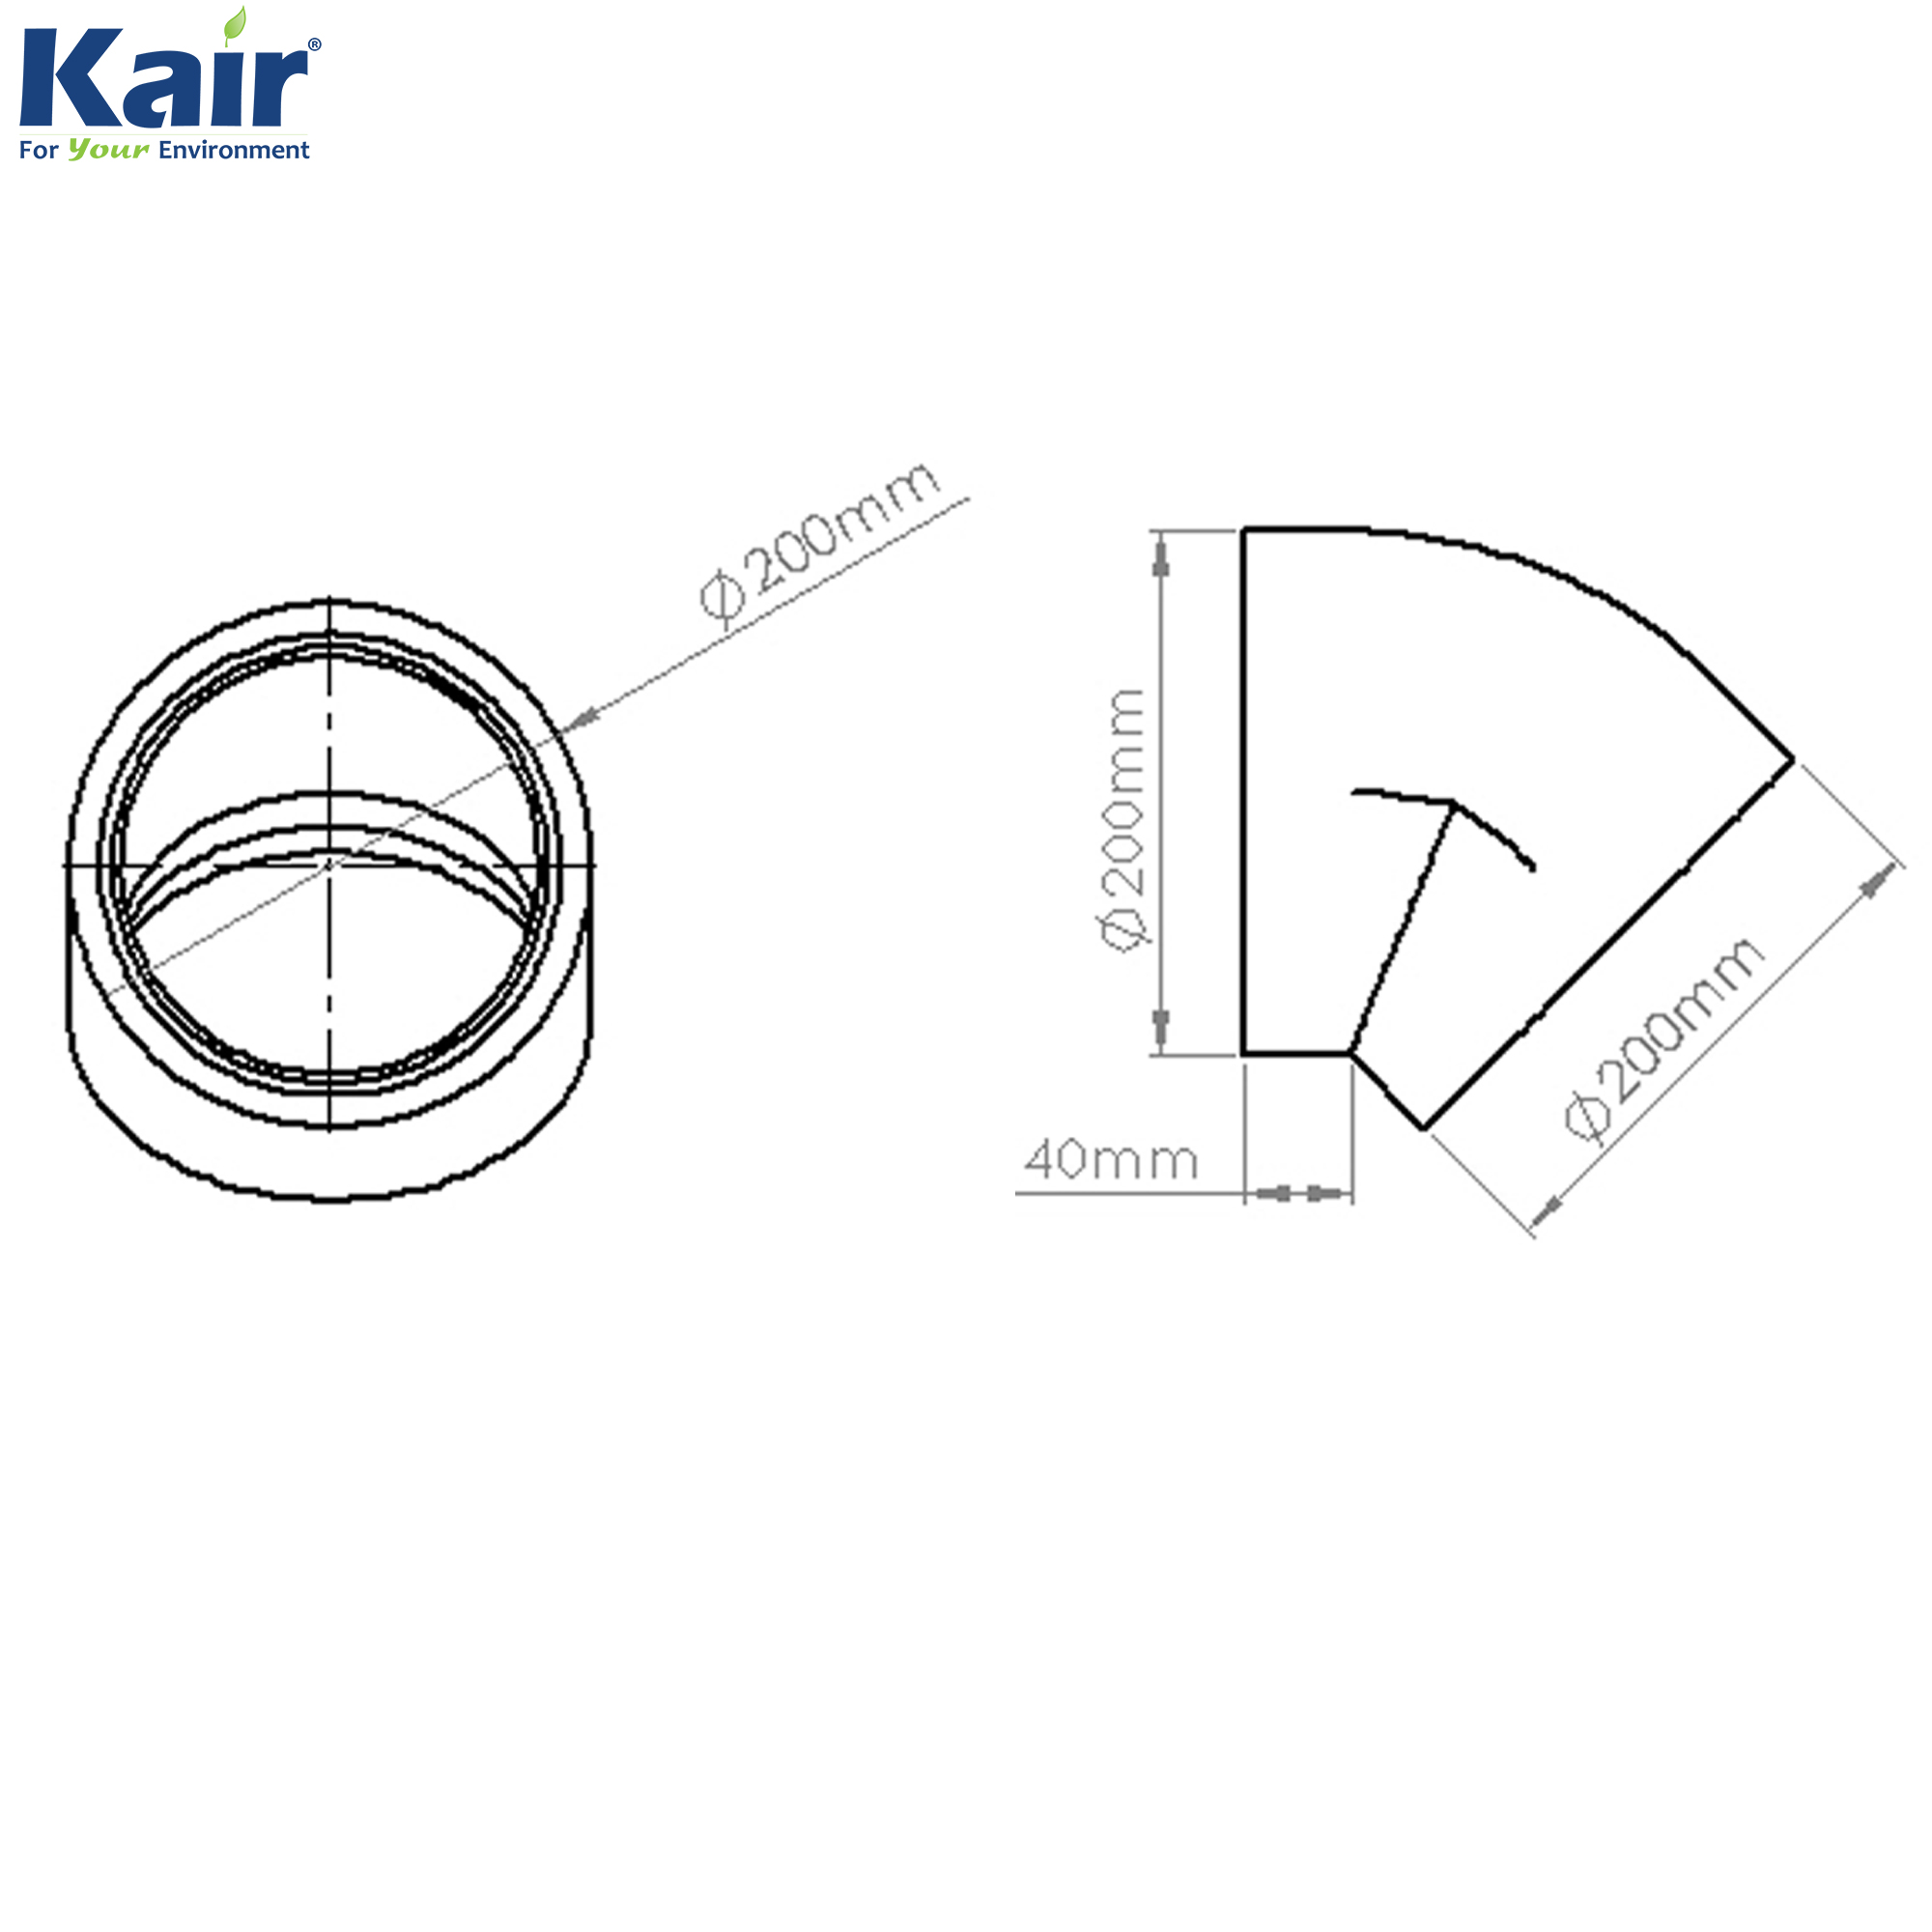 Kair Self-Seal Thermal Ducting - 160mm - 45 Degree Bends - Box of 6